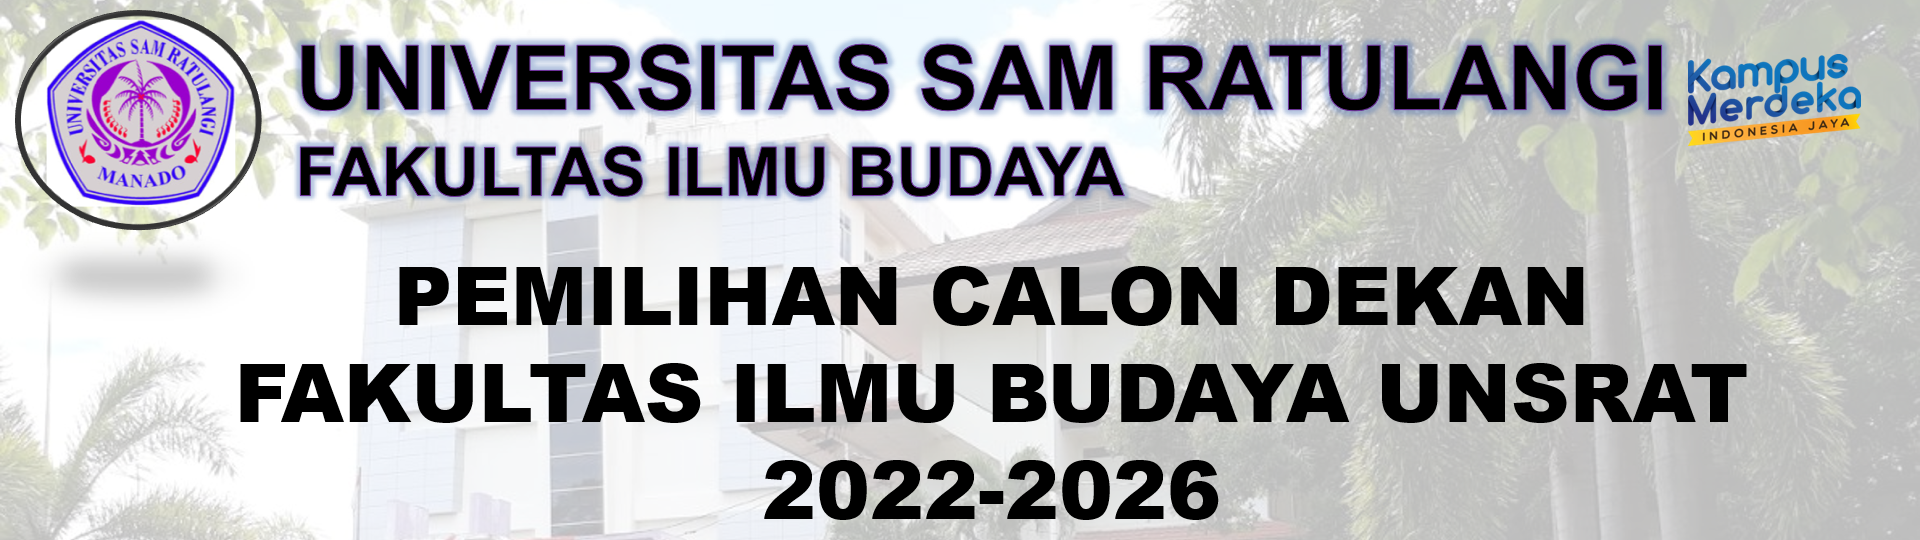 Pendaftaran Bakal Calon Dekan Fakultas Ilmu Budaya Periode 2022-2026